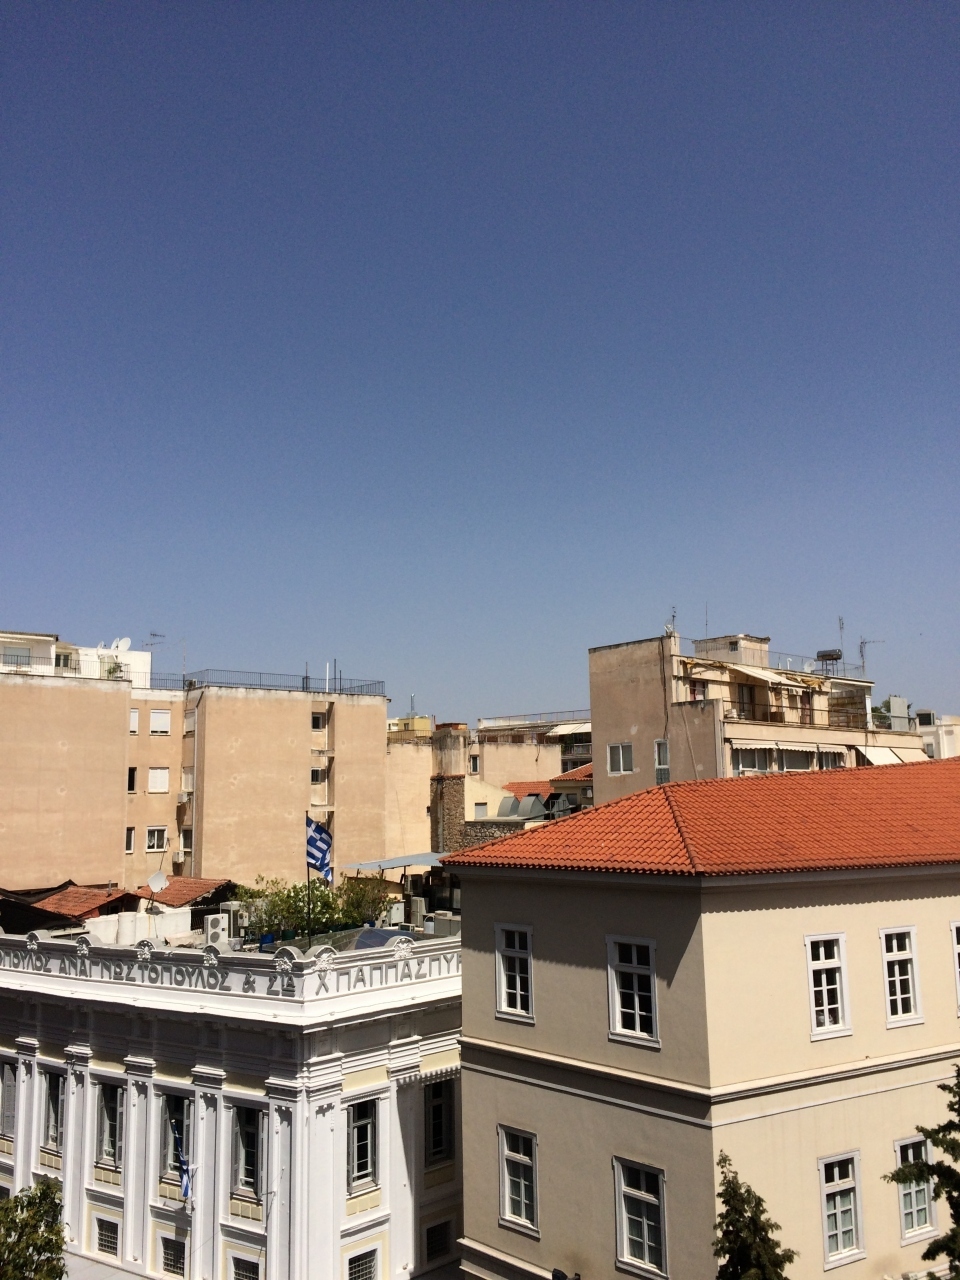 5月13日
ホテルプラカでむかえたアテネの朝。
テラスへ出てみると青空('∀')/